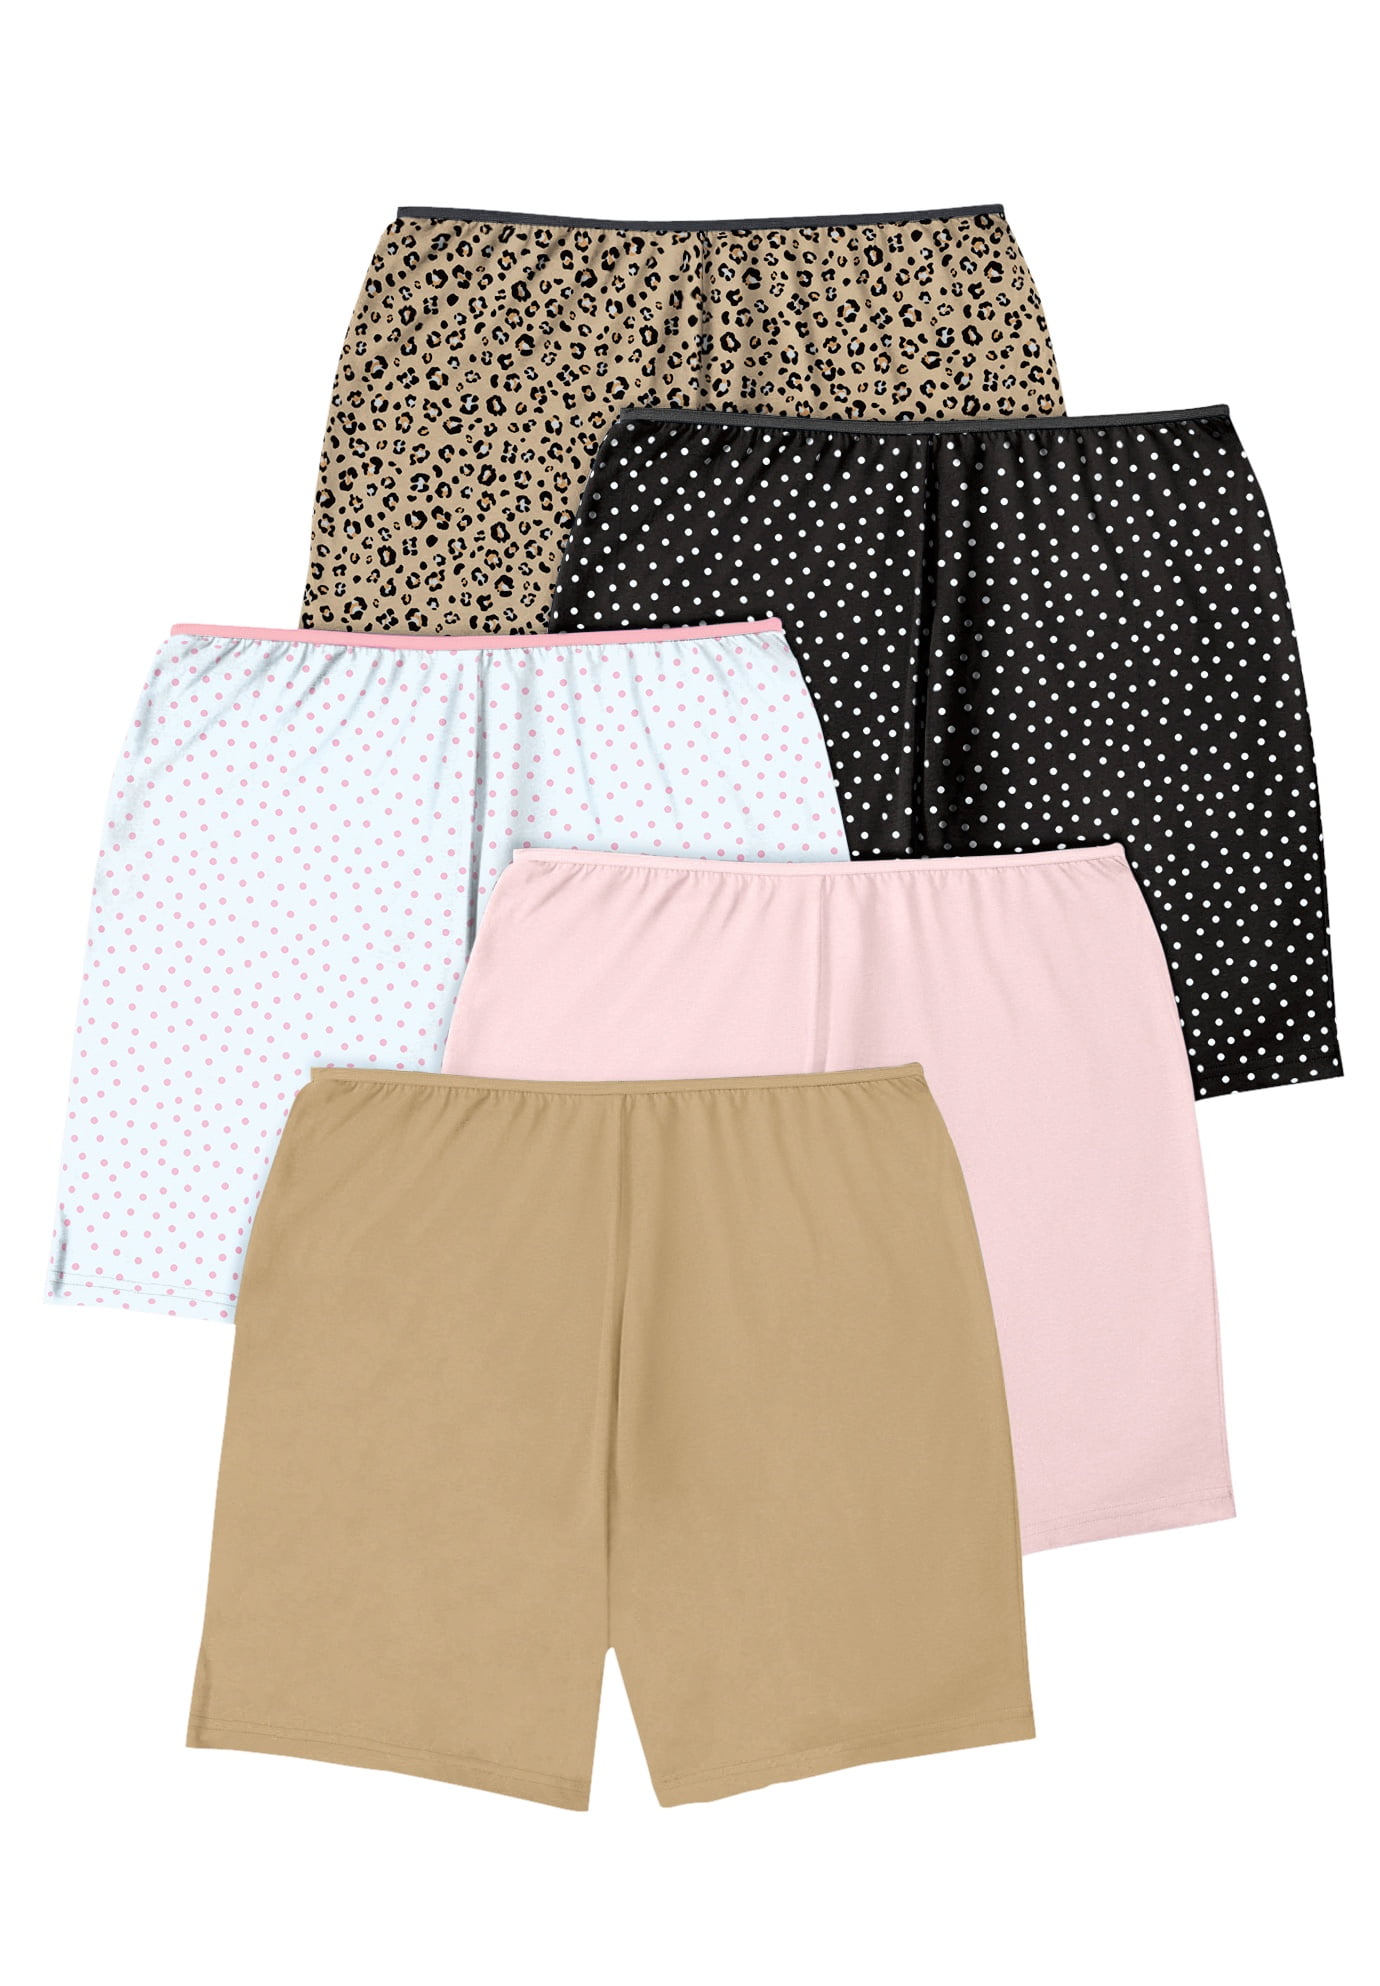 Comfort Choice Women's Plus Size Cotton Boxer 5-Pack Panties 